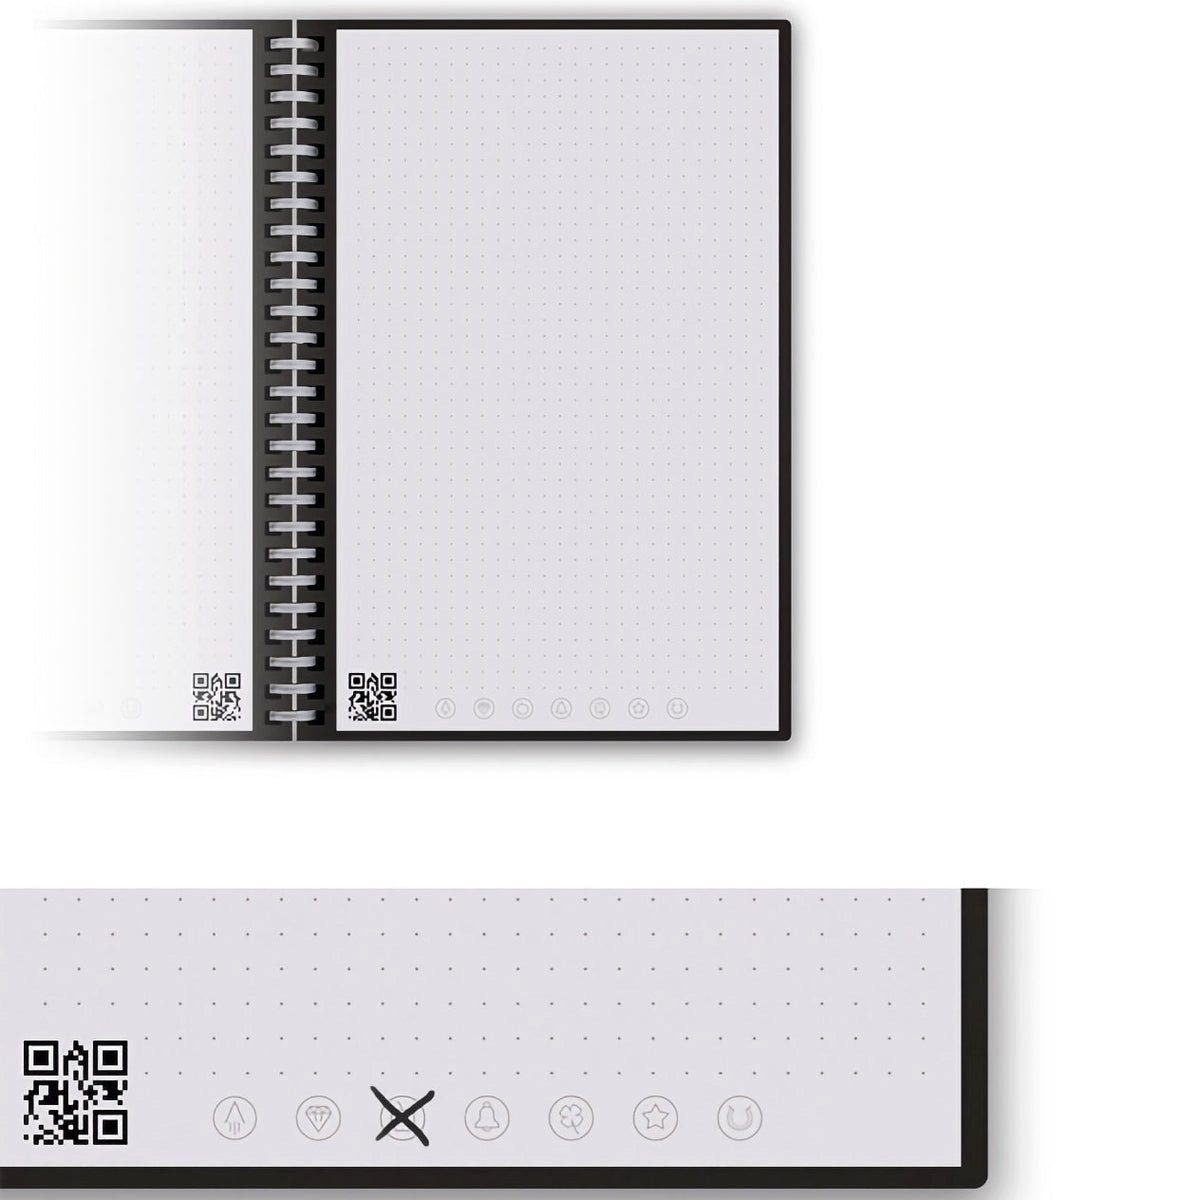 Rocket Scarlet Notizbuch App-Anbindung Symbol Book Notiz- Rocketbook - FUSION und und Sky, mit Tagging Everlast Skizzenbuch